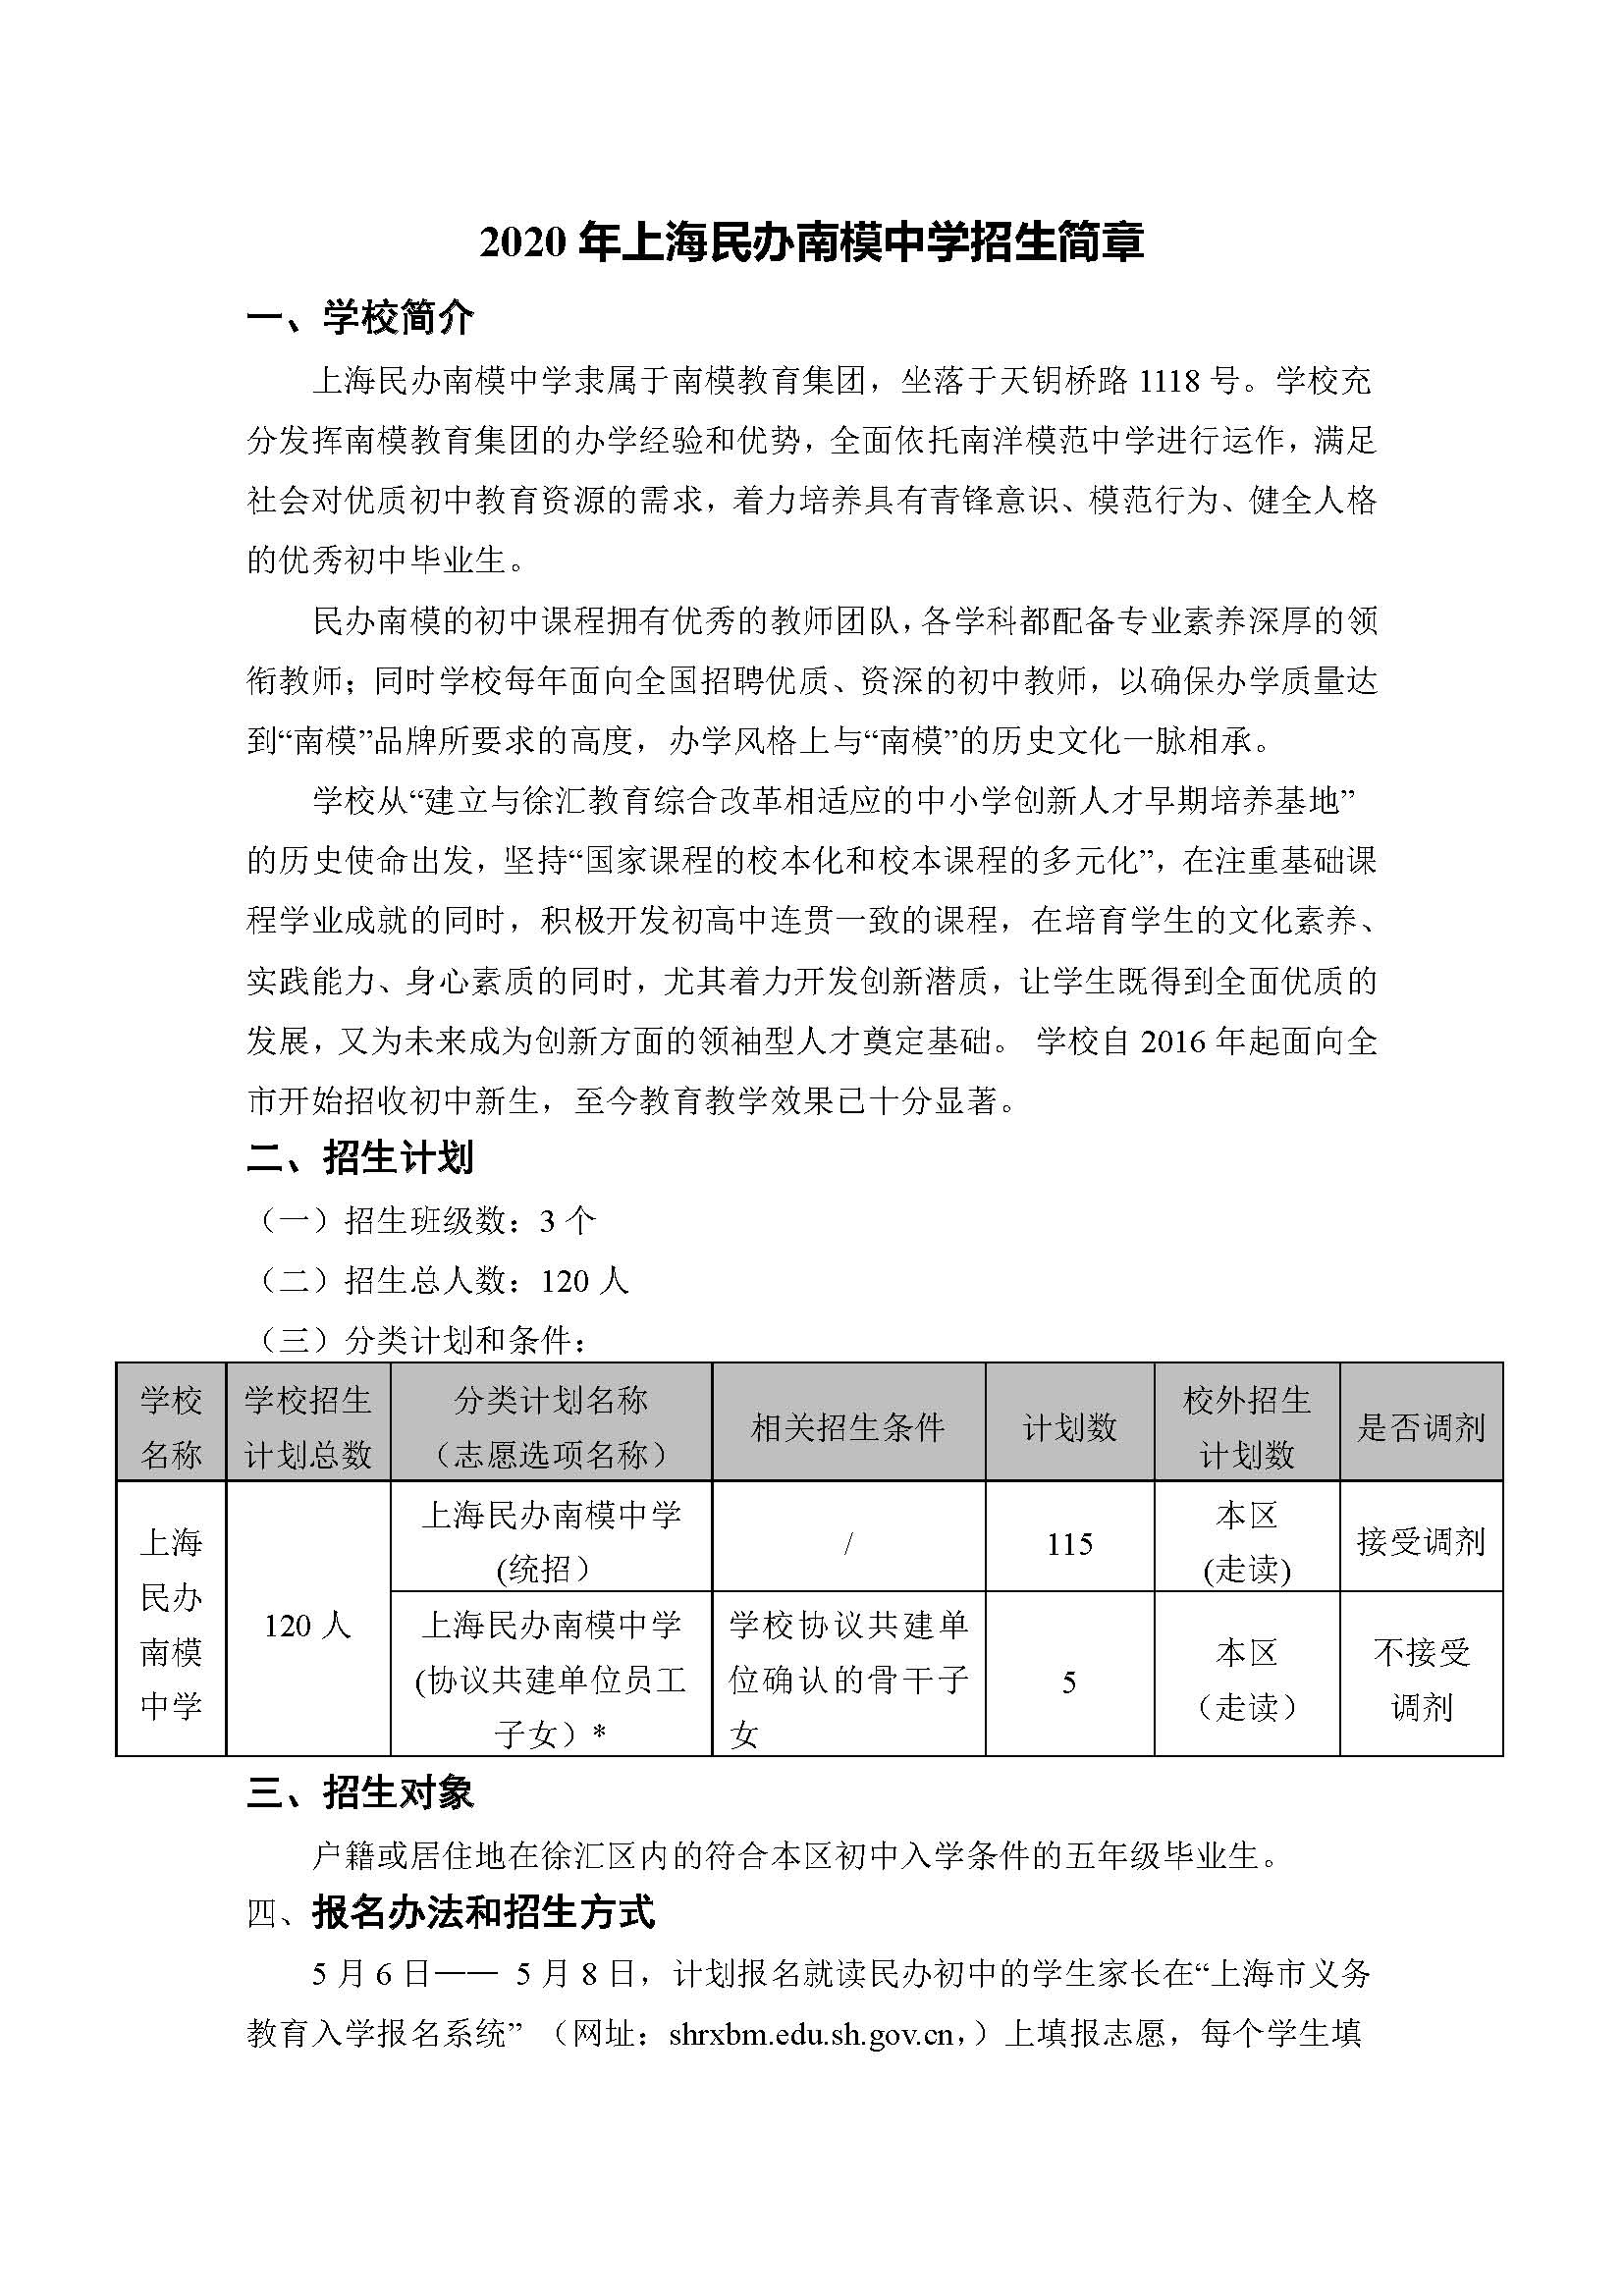 2020年上海民办南模中学招生简章（公示版）_页面_1.jpg